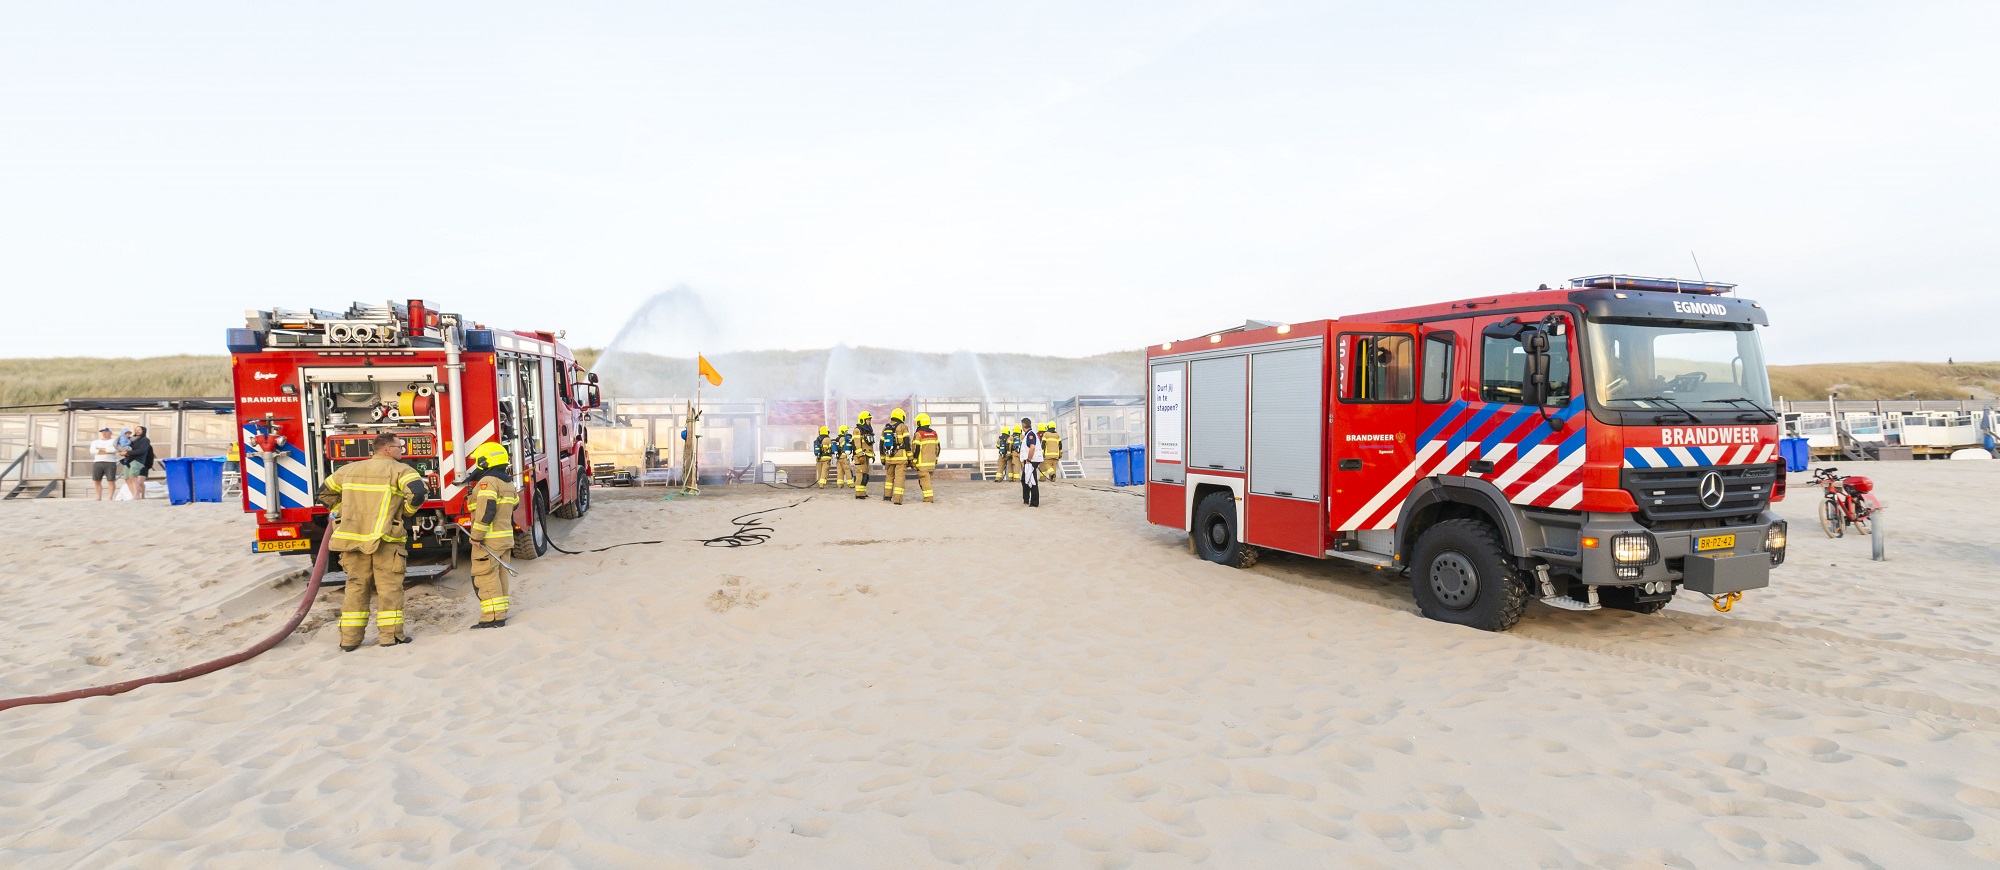 Brandweeroefening op het strand: obstakels en verborgen gevaren